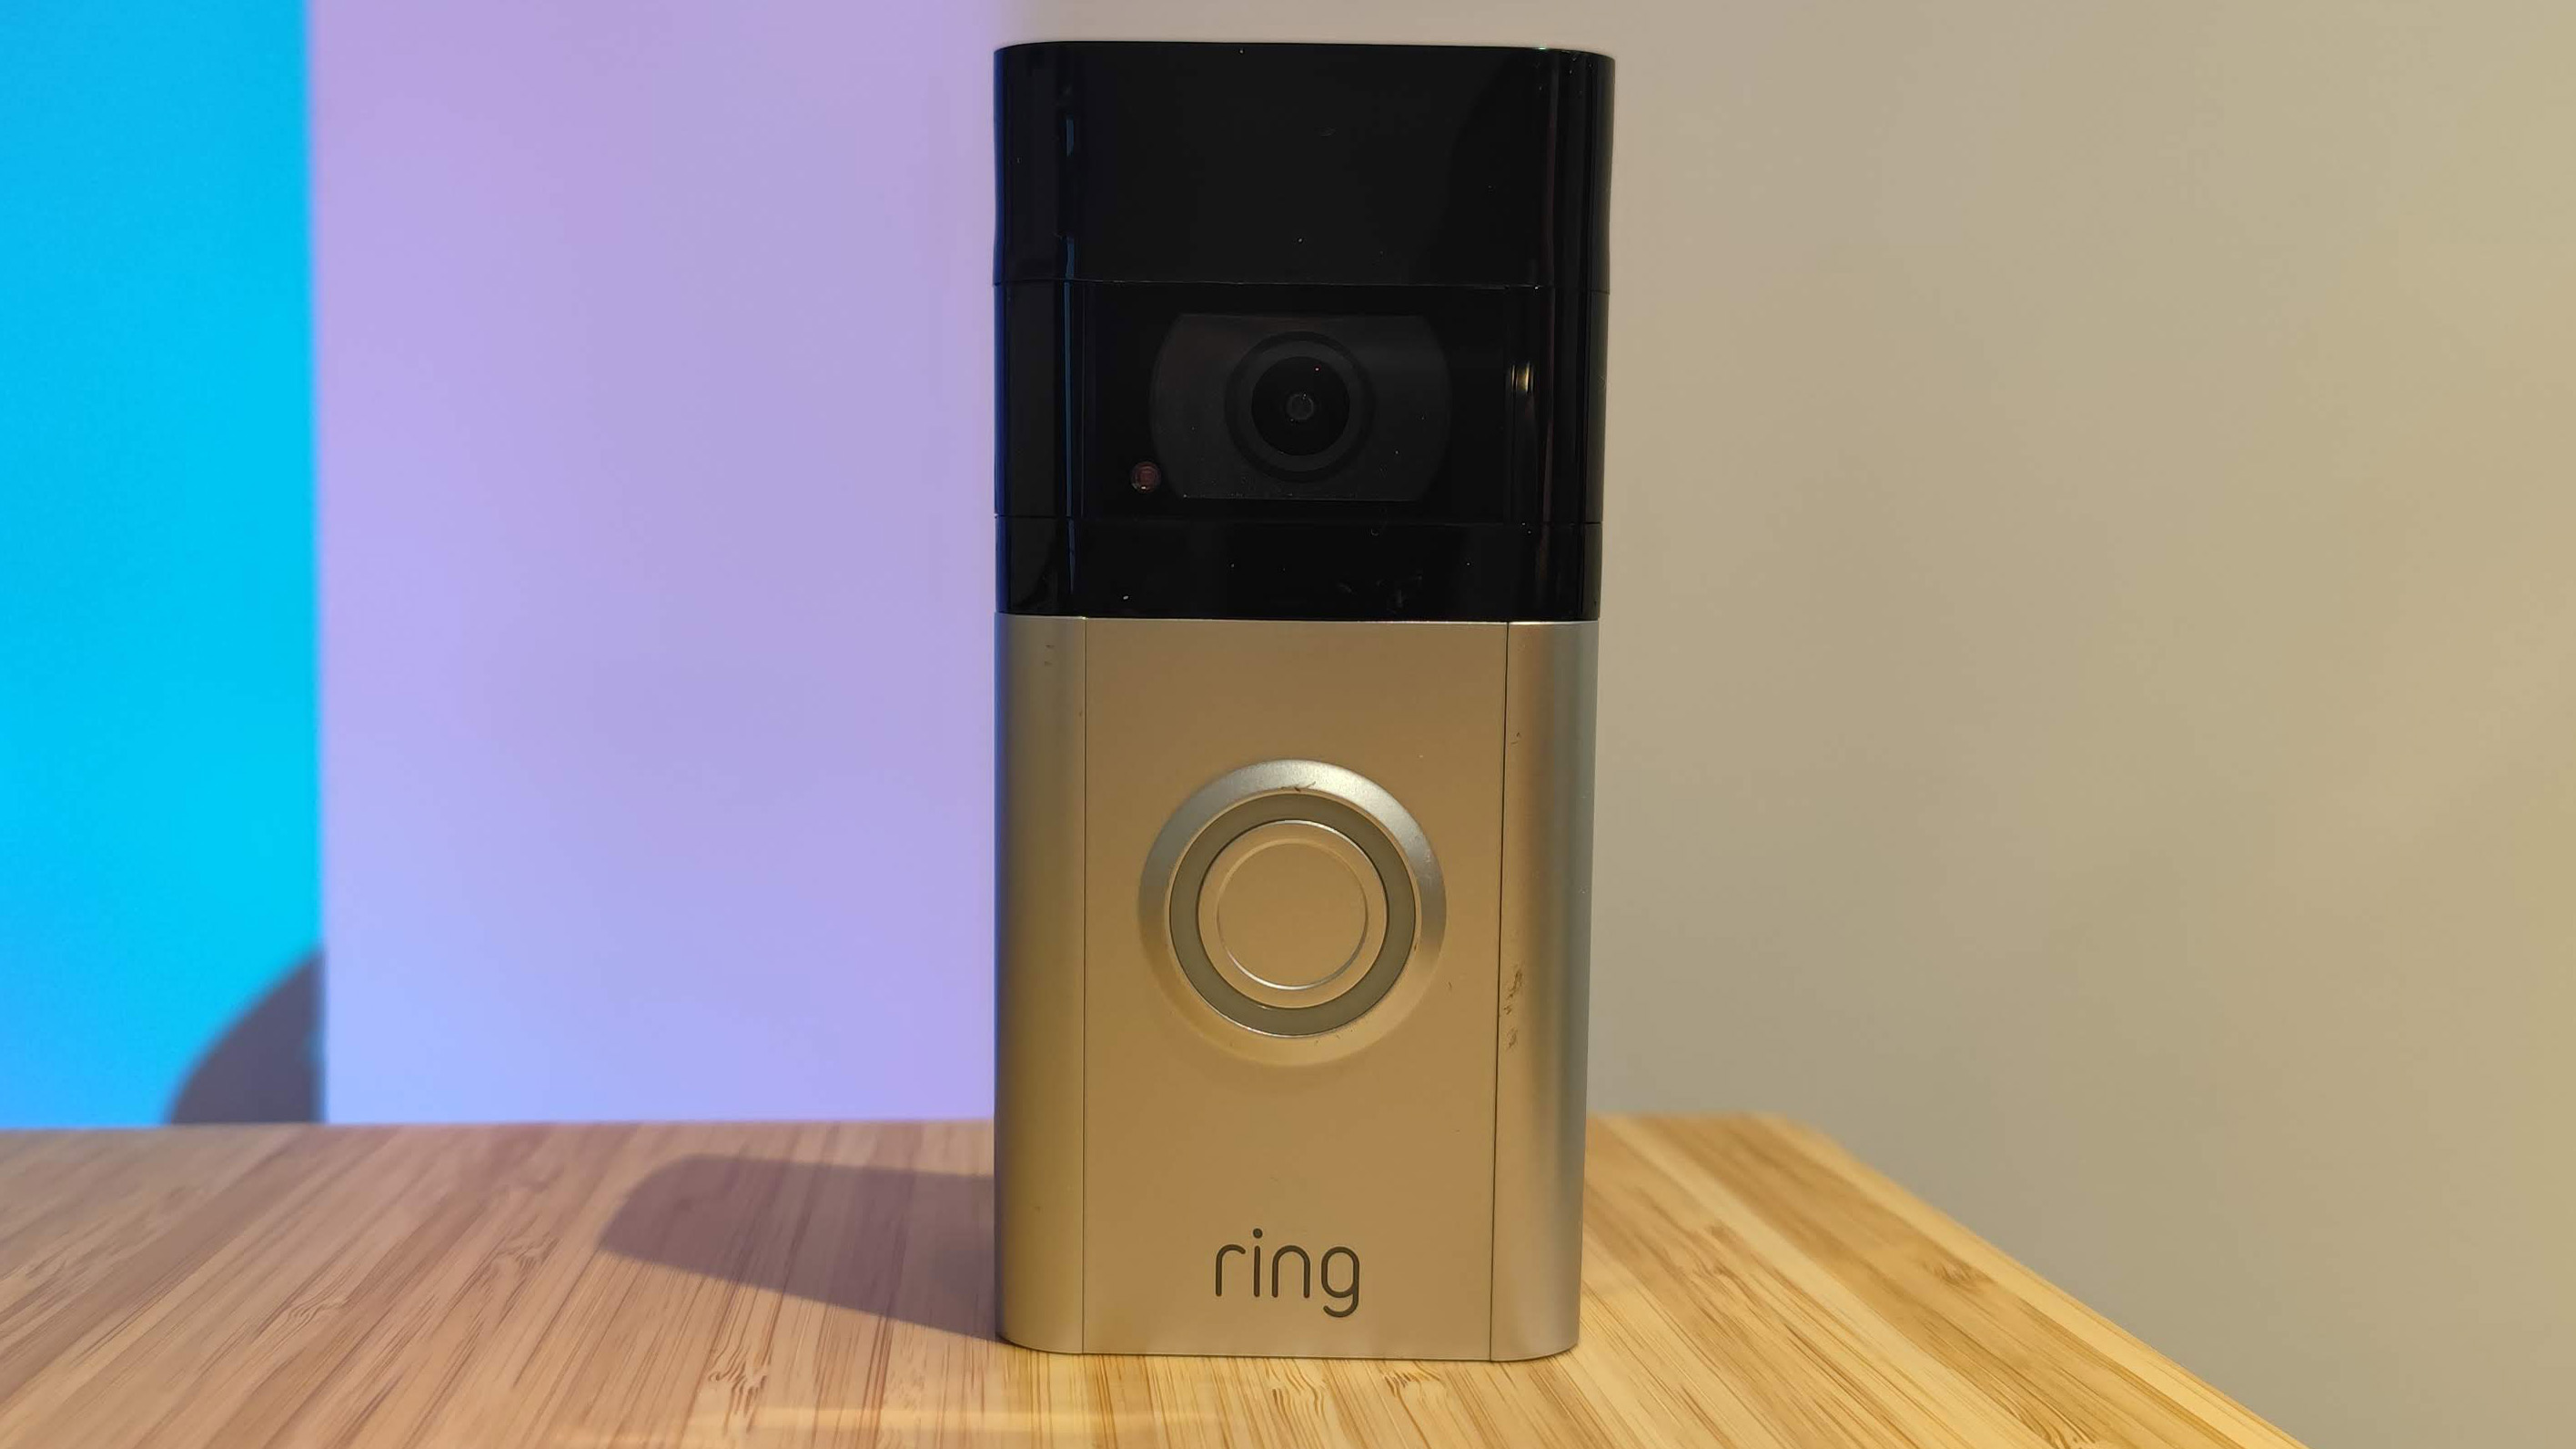 En svart och silvrig Ring Video Doorbell 4 står på ett träfärgat bord mot en vit vägg som lyses upp av blått och lila ljus.